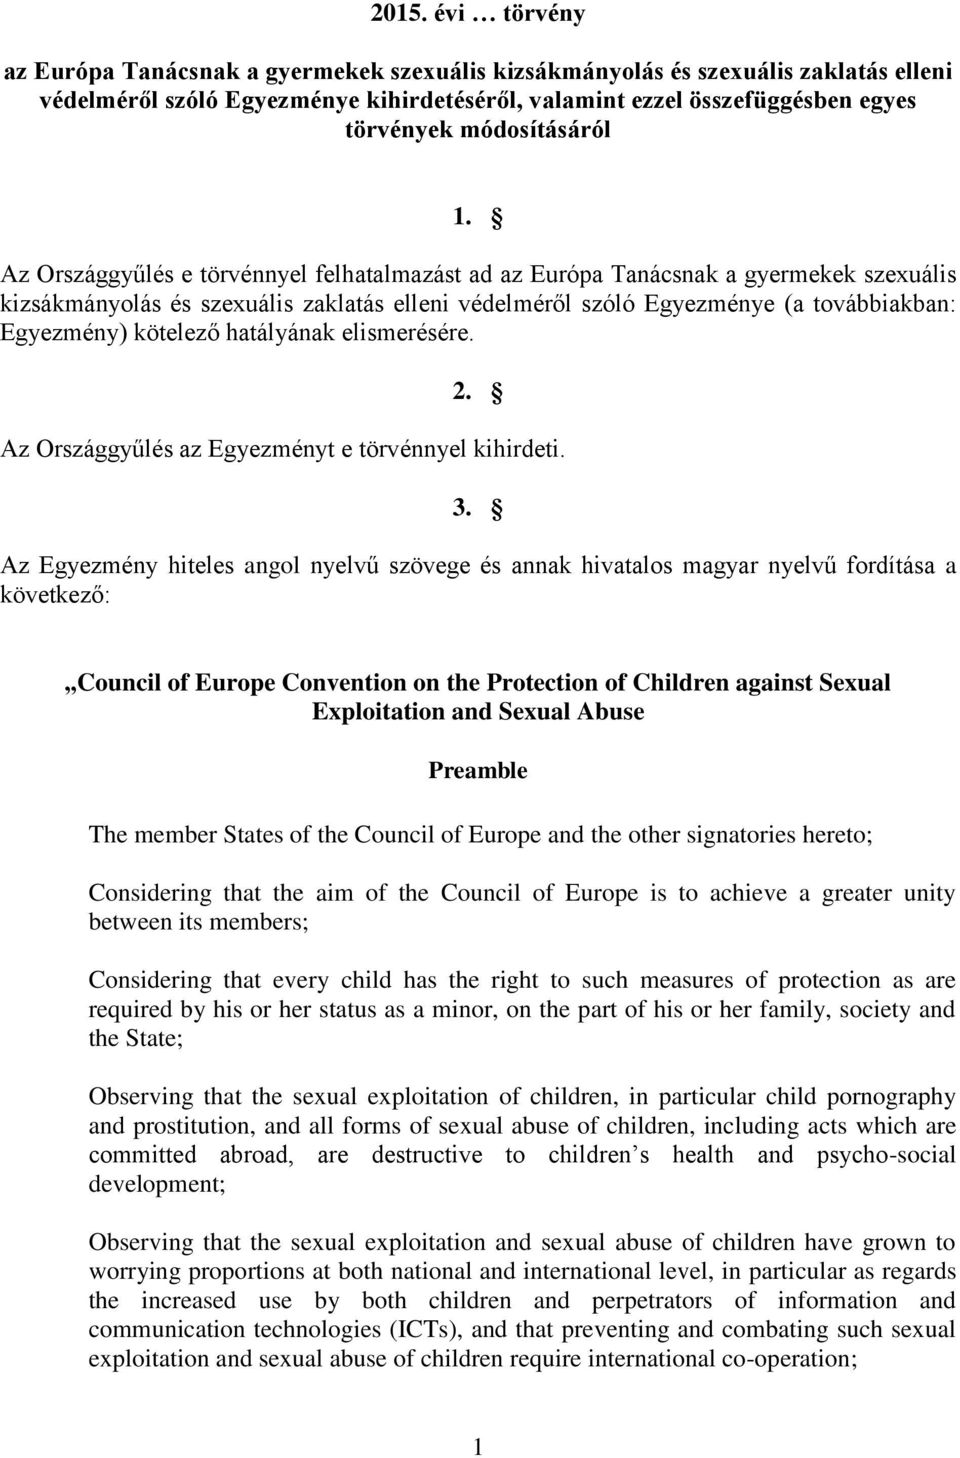 Az Országgyűlés e törvénnyel felhatalmazást ad az Európa Tanácsnak a gyermekek szexuális kizsákmányolás és szexuális zaklatás elleni védelméről szóló Egyezménye (a továbbiakban: Egyezmény) kötelező